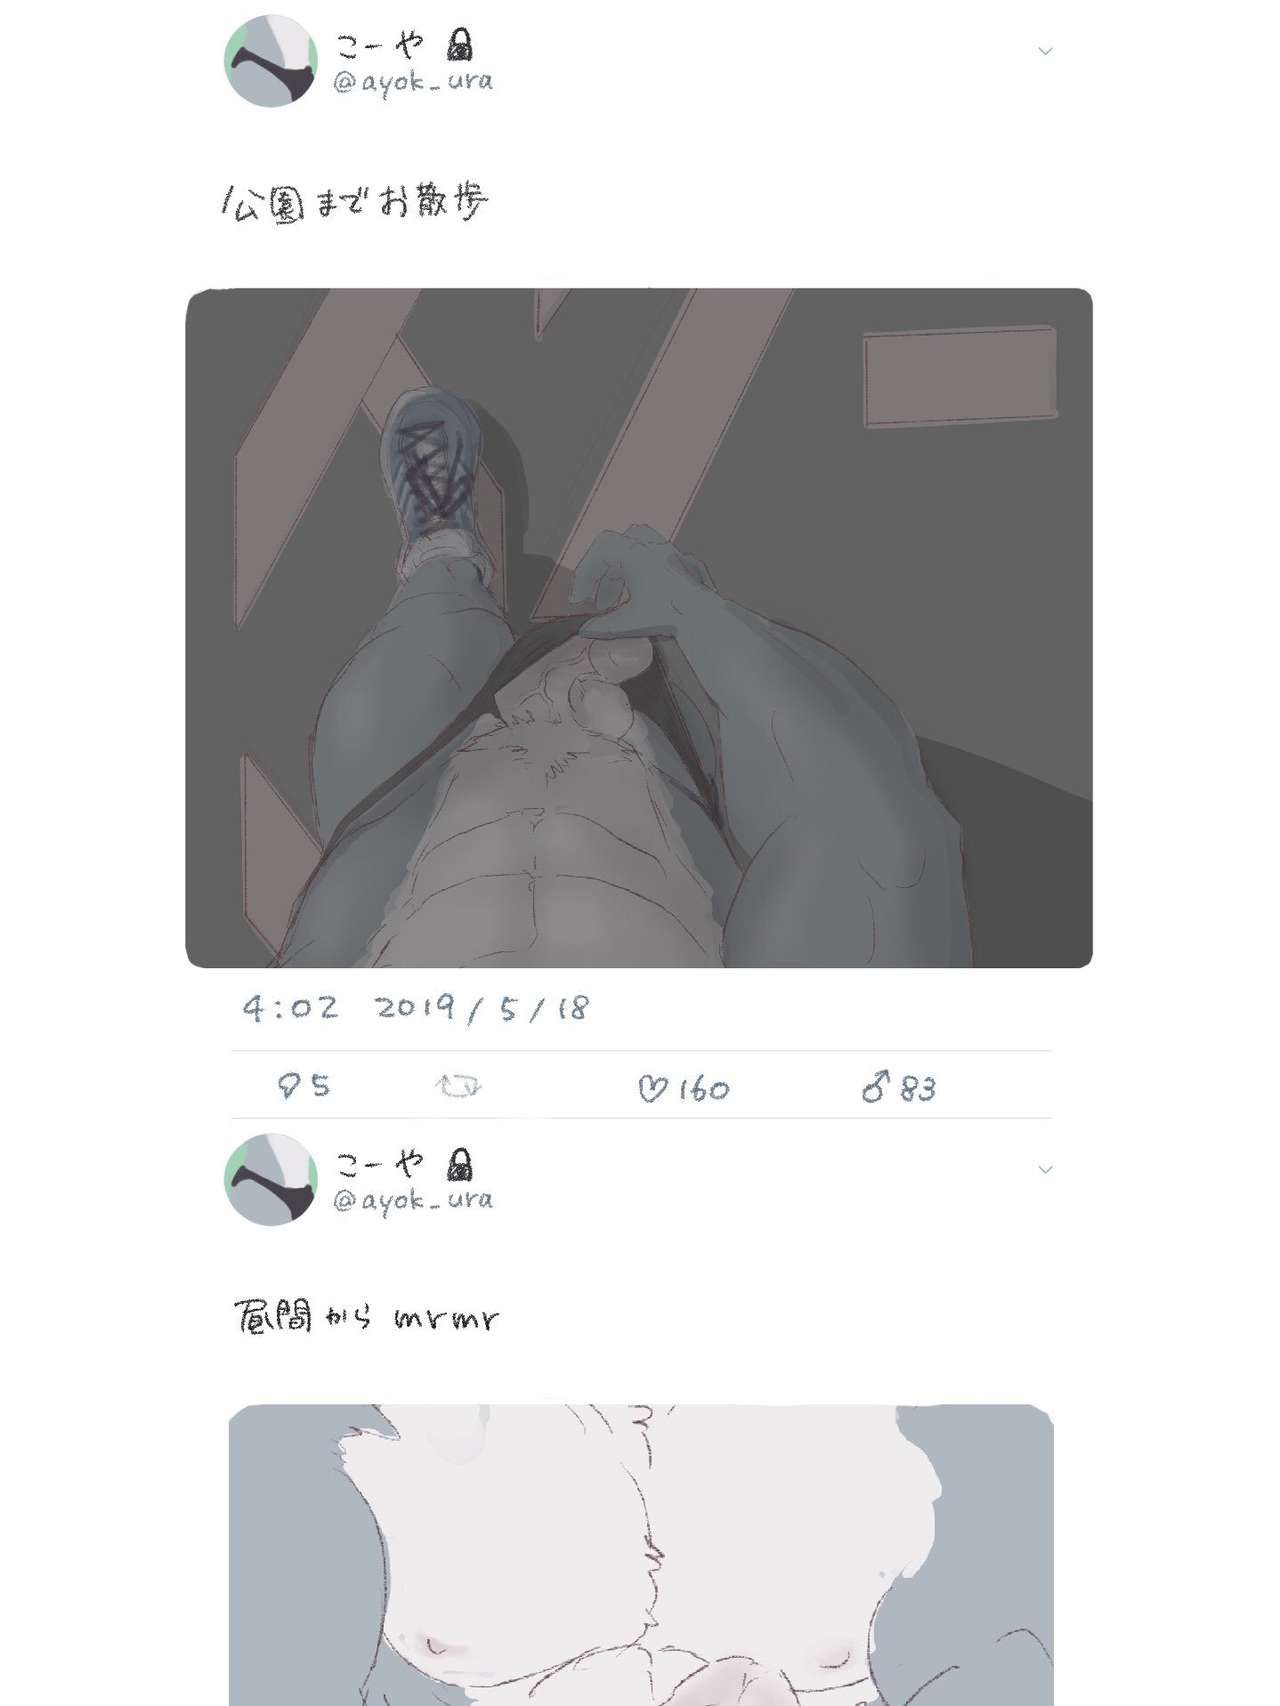 Artist - nun6 / yunu38 (twitter) 677